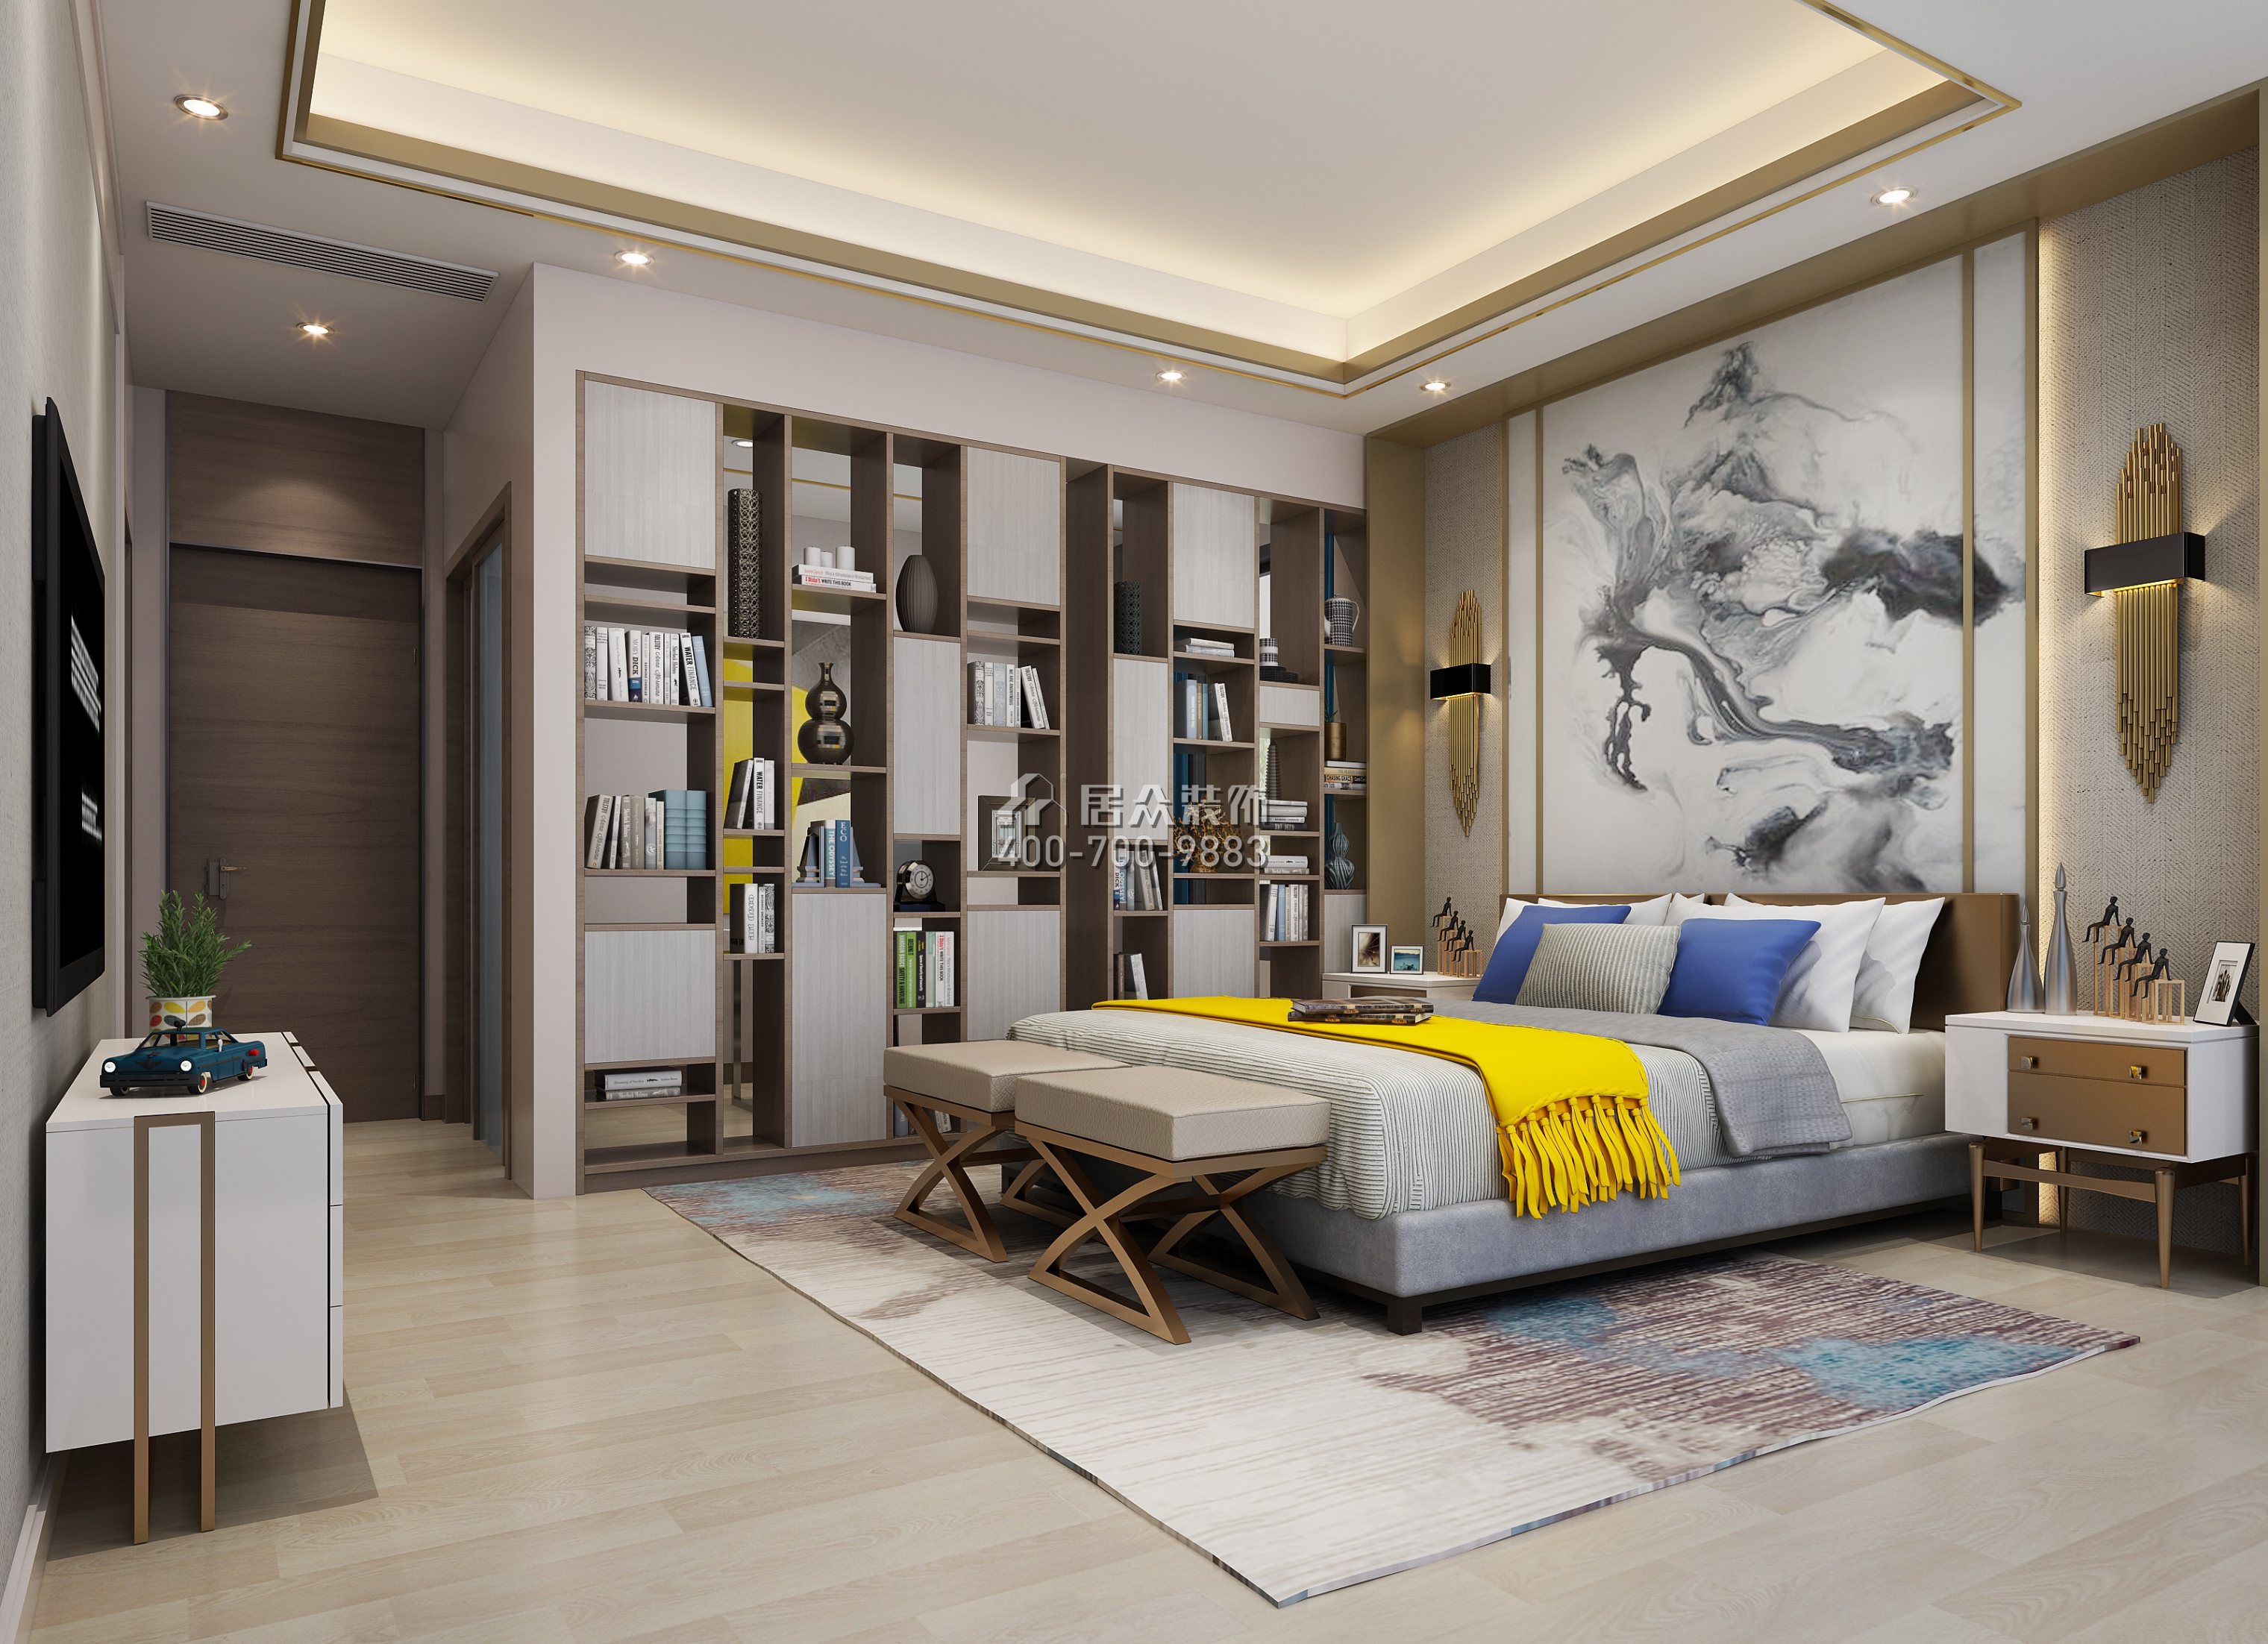 鼎峰尚境600平方米现代简约风格别墅户型卧室装修效果图